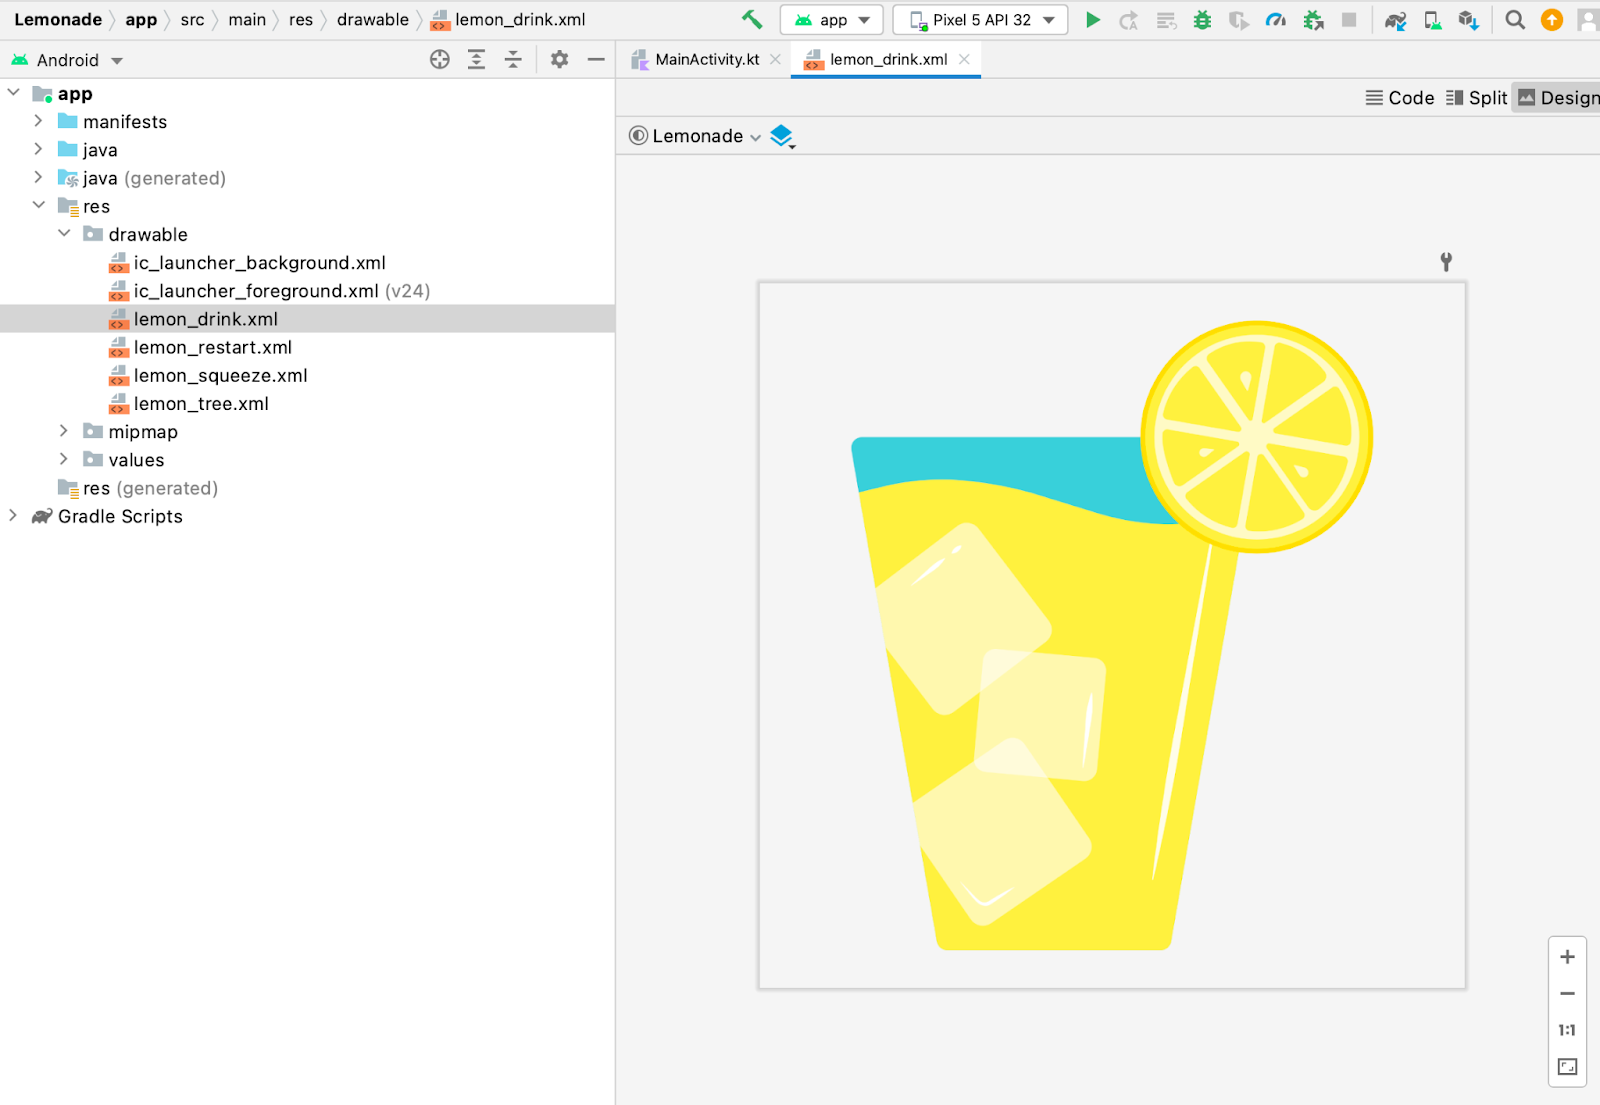 Dans Android Studio, le volet "Project" (Projet) s'affiche. Un fichier drawable lemon_drink.xml y est sélectionné. Dans le volet "Conception", un aperçu du fichier drawable s'ouvre. Il s'agit d'une image d'un grand verre de citronnade.